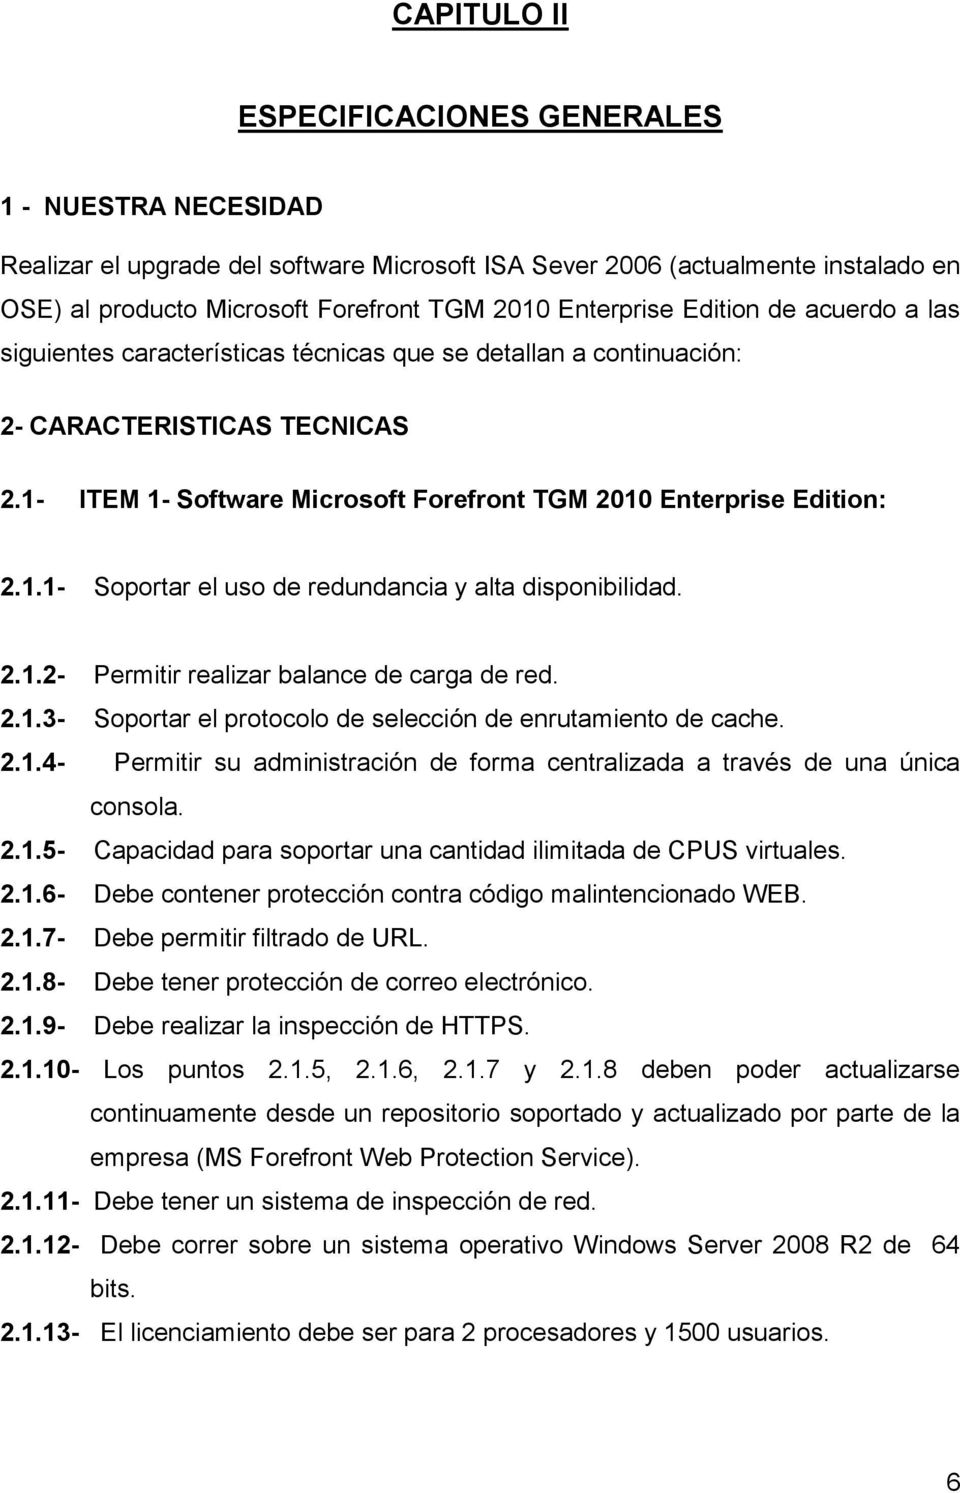 1- ITEM 1- Software Microsoft Forefront TGM 2010 Enterprise Edition: 2.1.1- Soportar el uso de redundancia y alta disponibilidad. 2.1.2- Permitir realizar balance de carga de red. 2.1.3- Soportar el protocolo de selección de enrutamiento de cache.